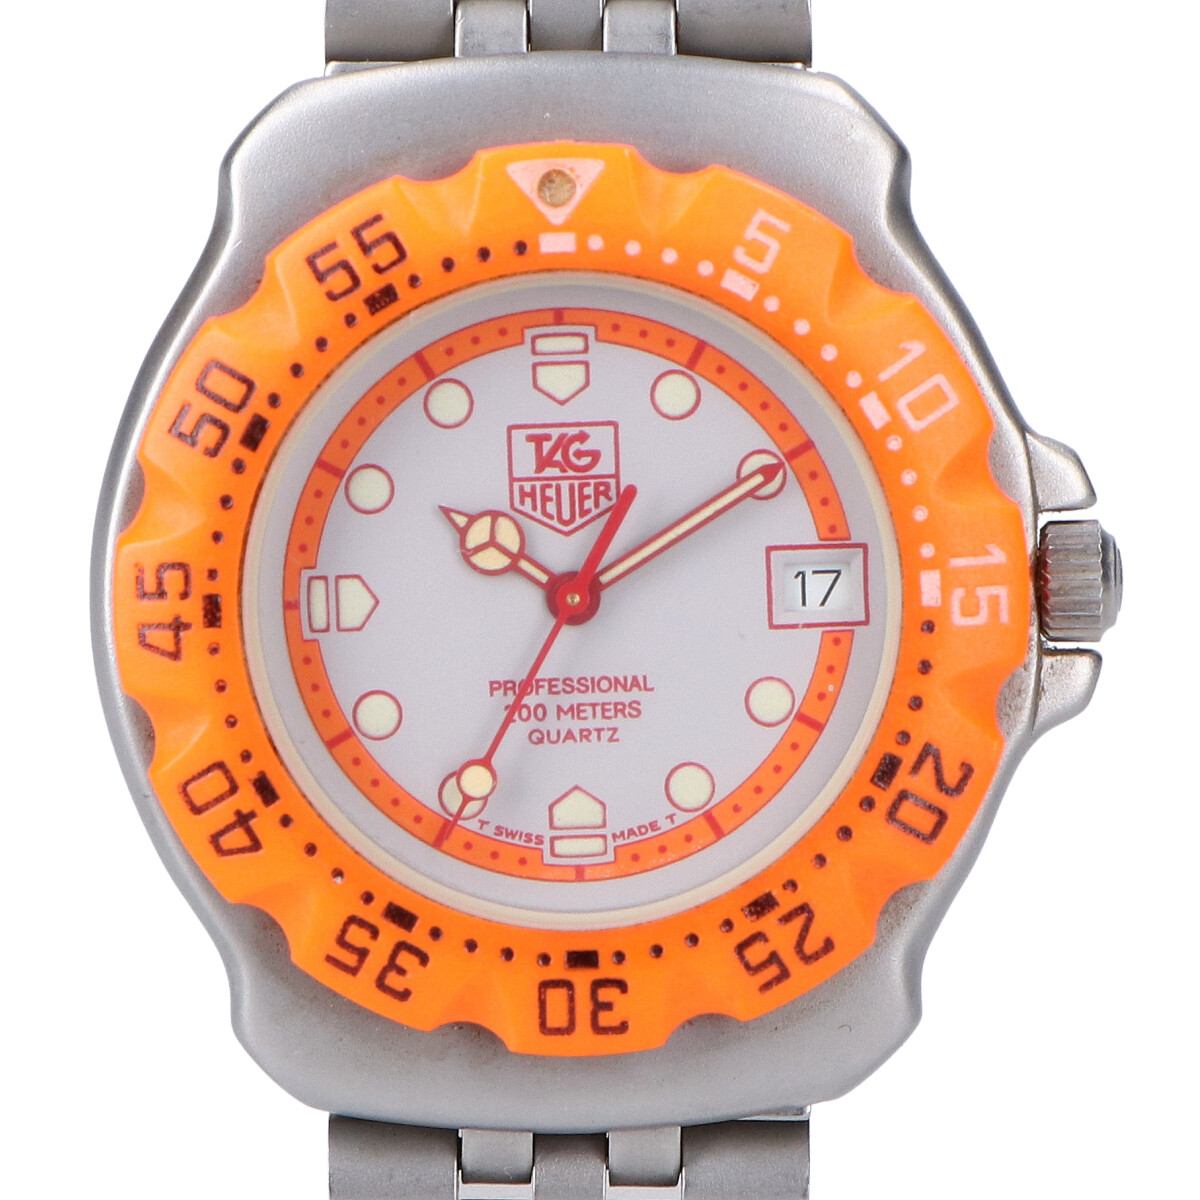 タグ・ホイヤーの373.513 フォーミュラ1 プロフェッショナル200 クォーツ腕時計の買取実績です。